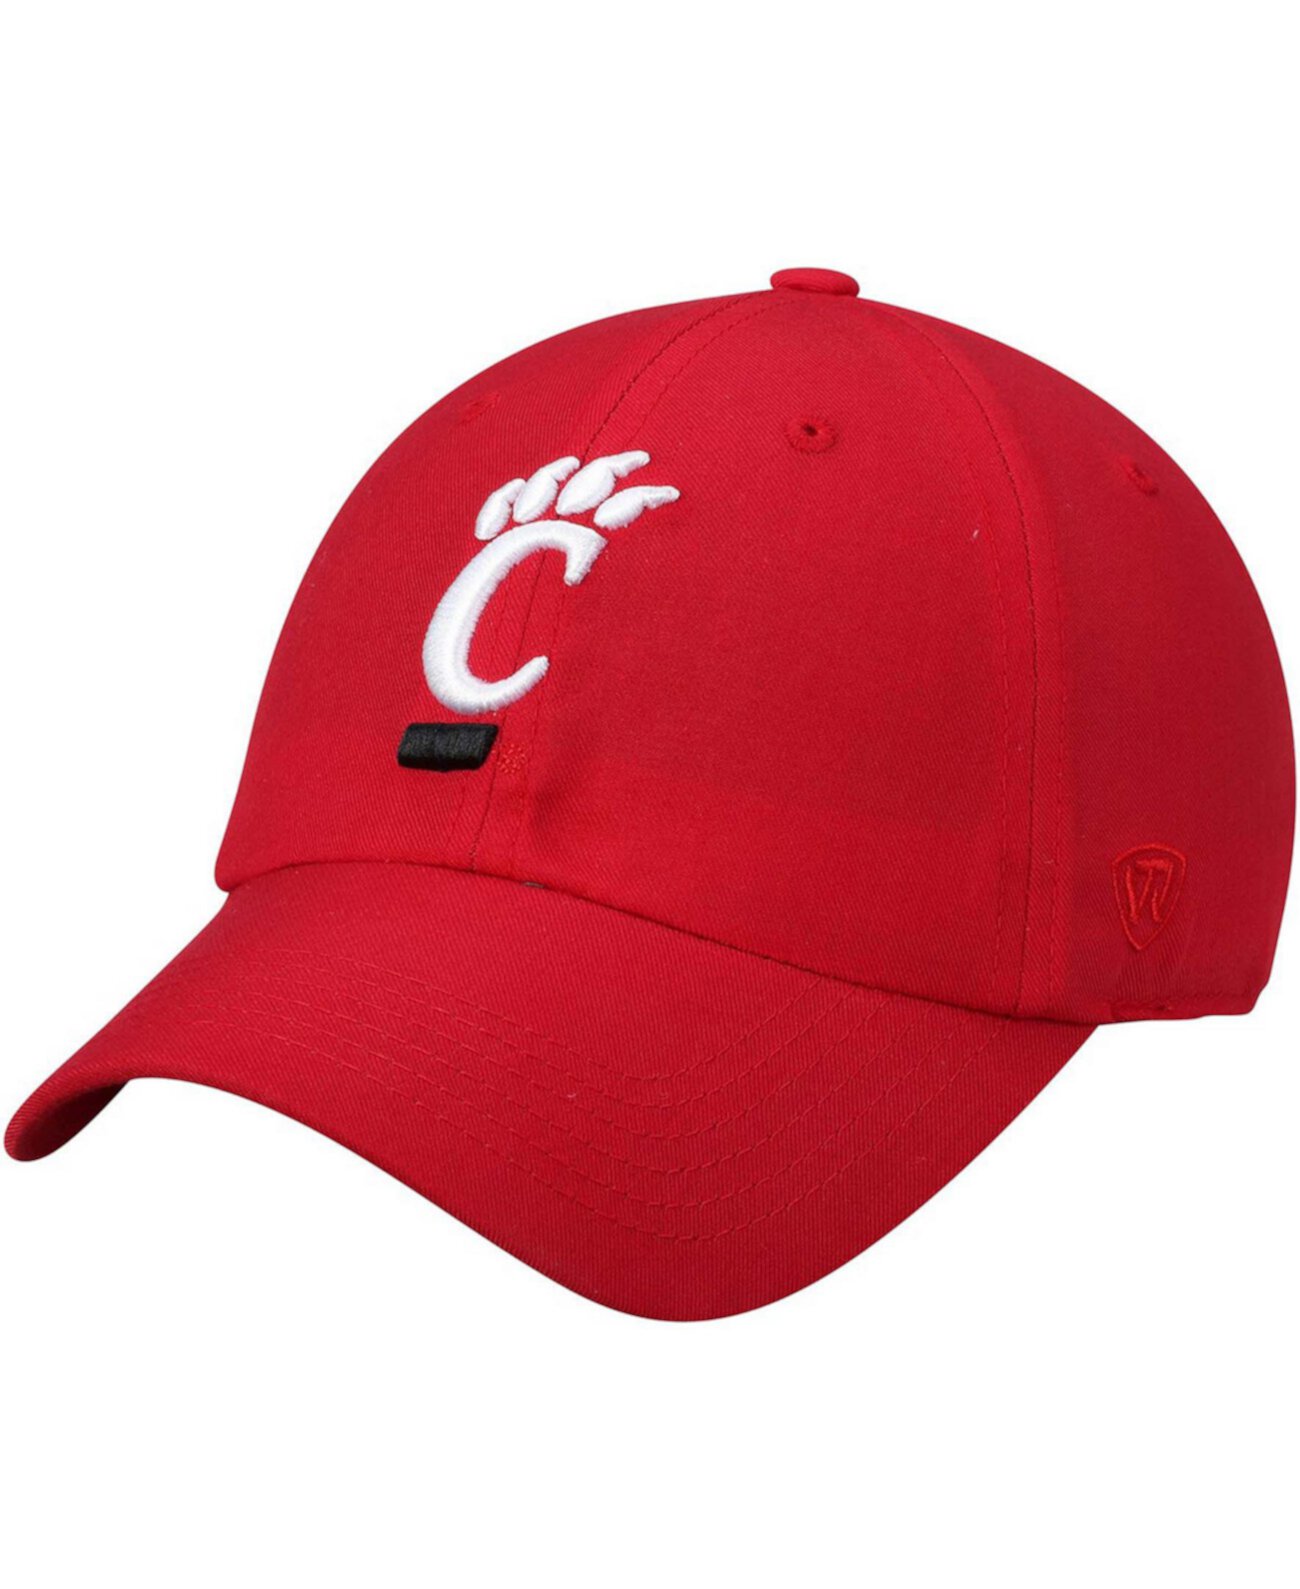 Мужская красная регулируемая шляпа с логотипом Cincinnati Bearcats Primary со скрепками Top of the World